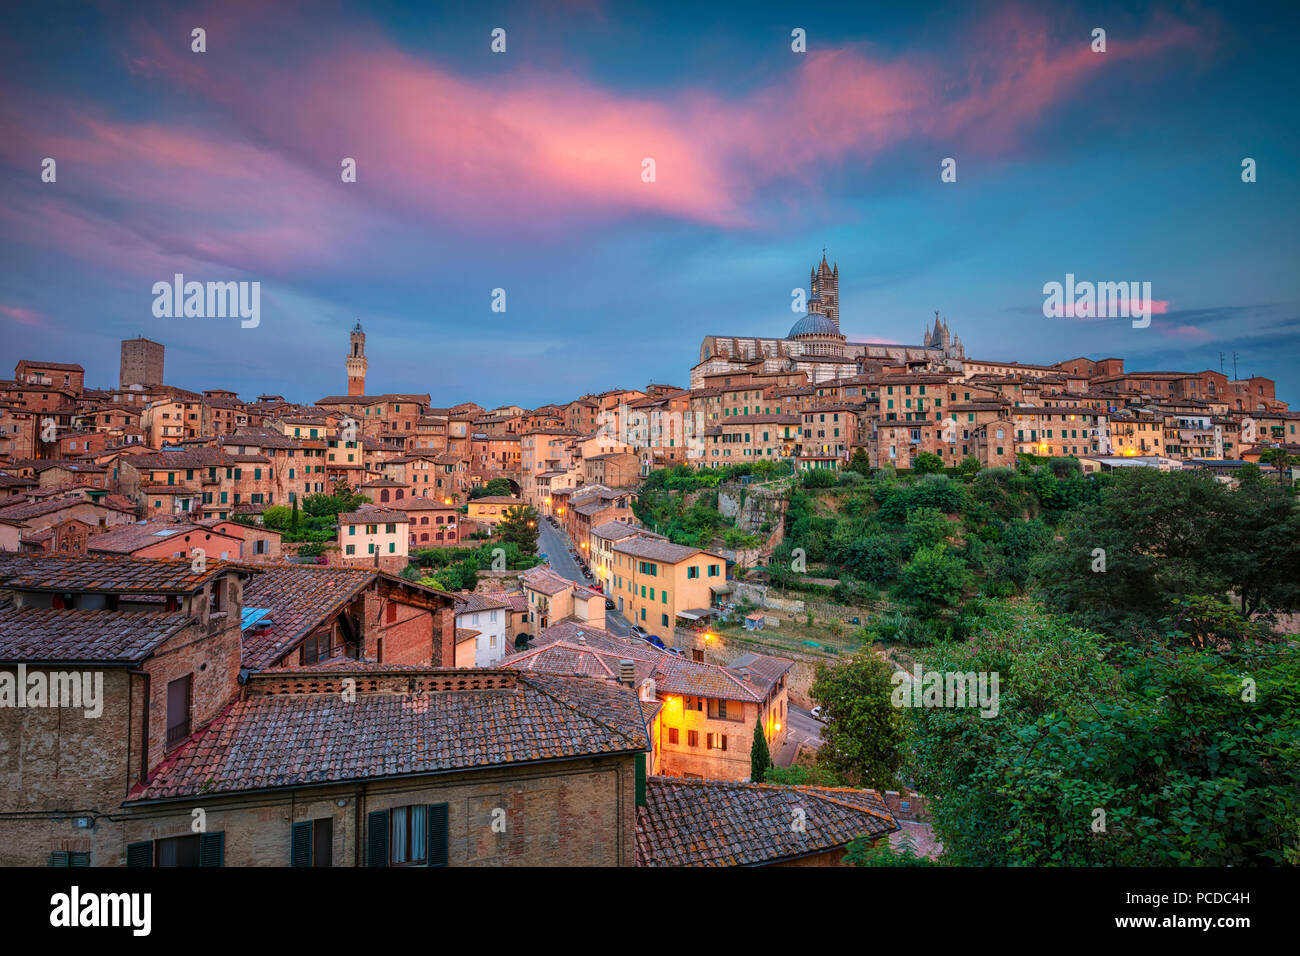 Siena. Stadtbild Luftbild der mittelalterlichen Stadt Siena, Italien während des Sonnenuntergangs. Stockfoto